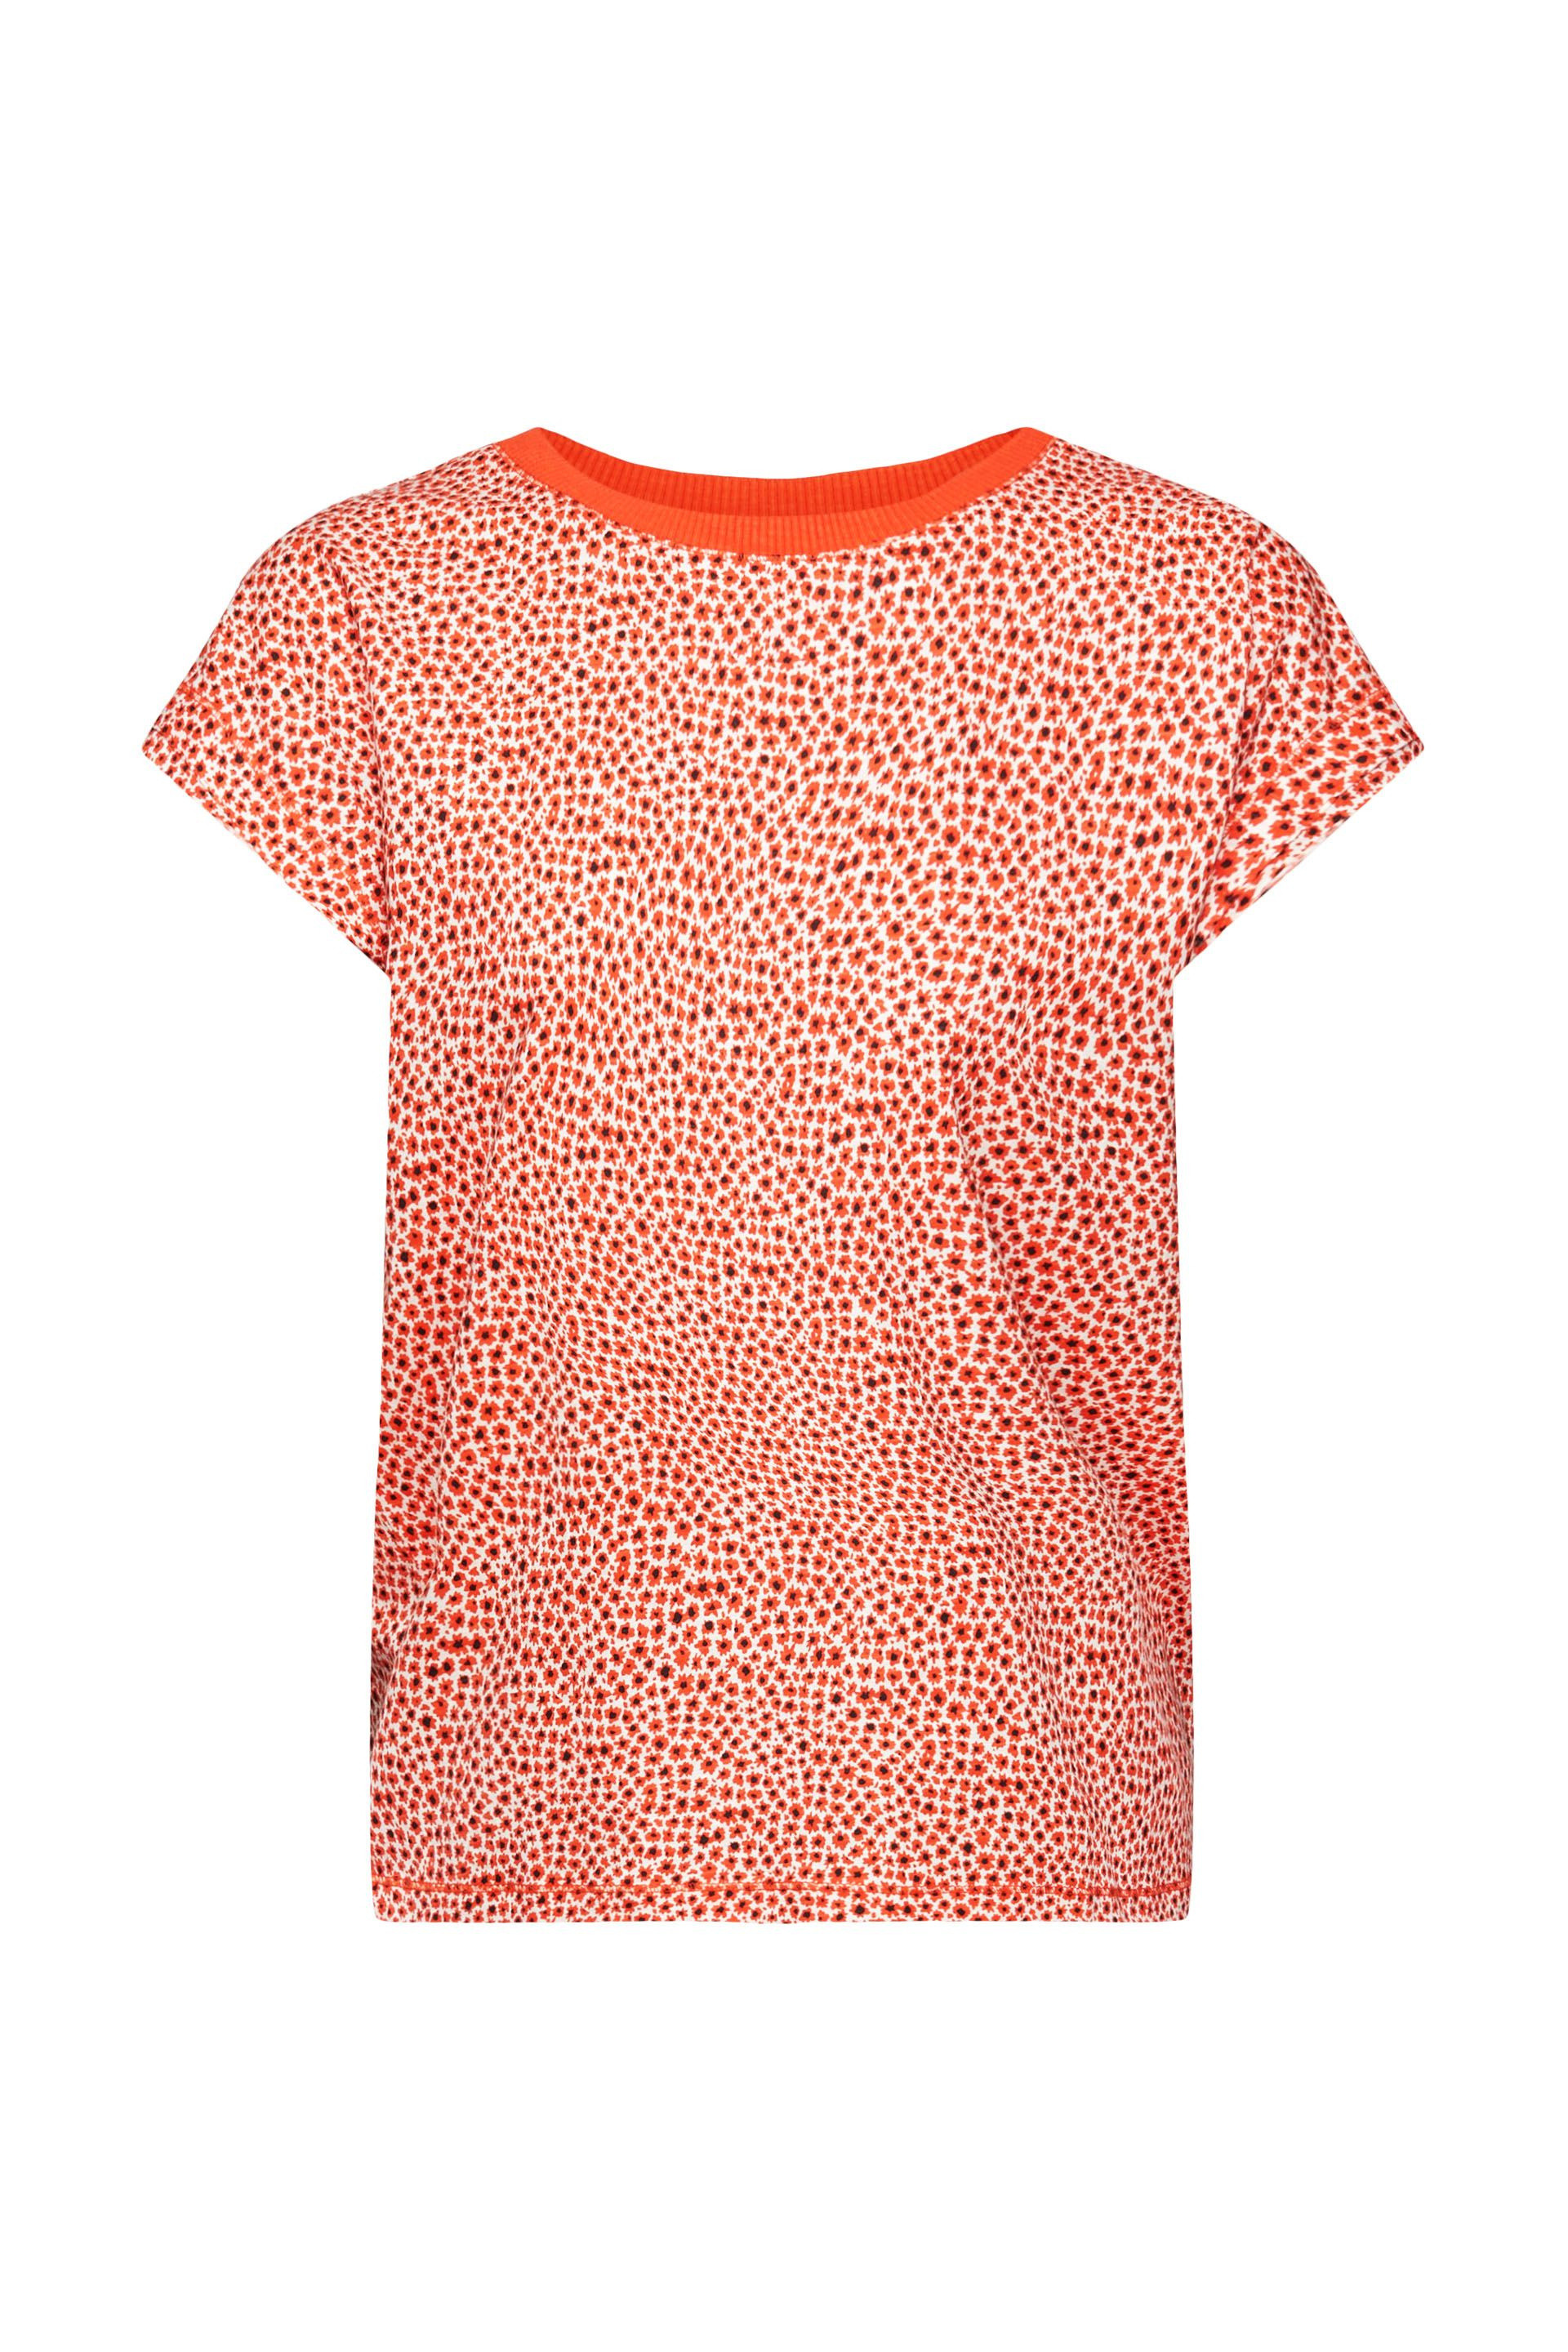 Esprit - T-shirt with all over floral motif, Orange, large image number 0